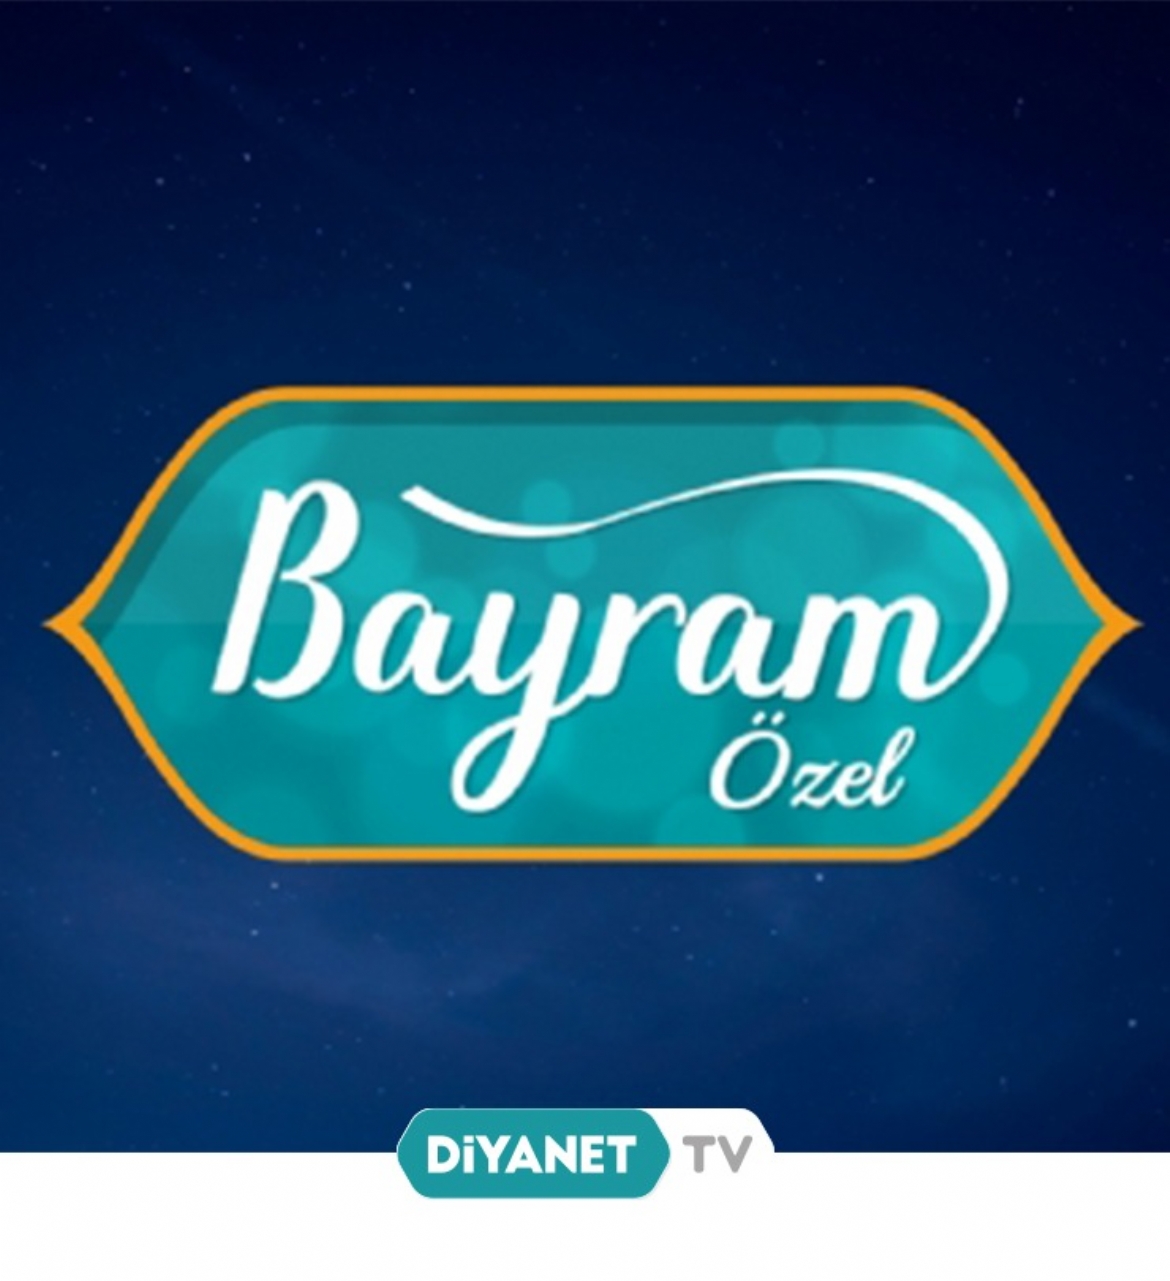 “Bayram Özel” Diyanet TV’de…